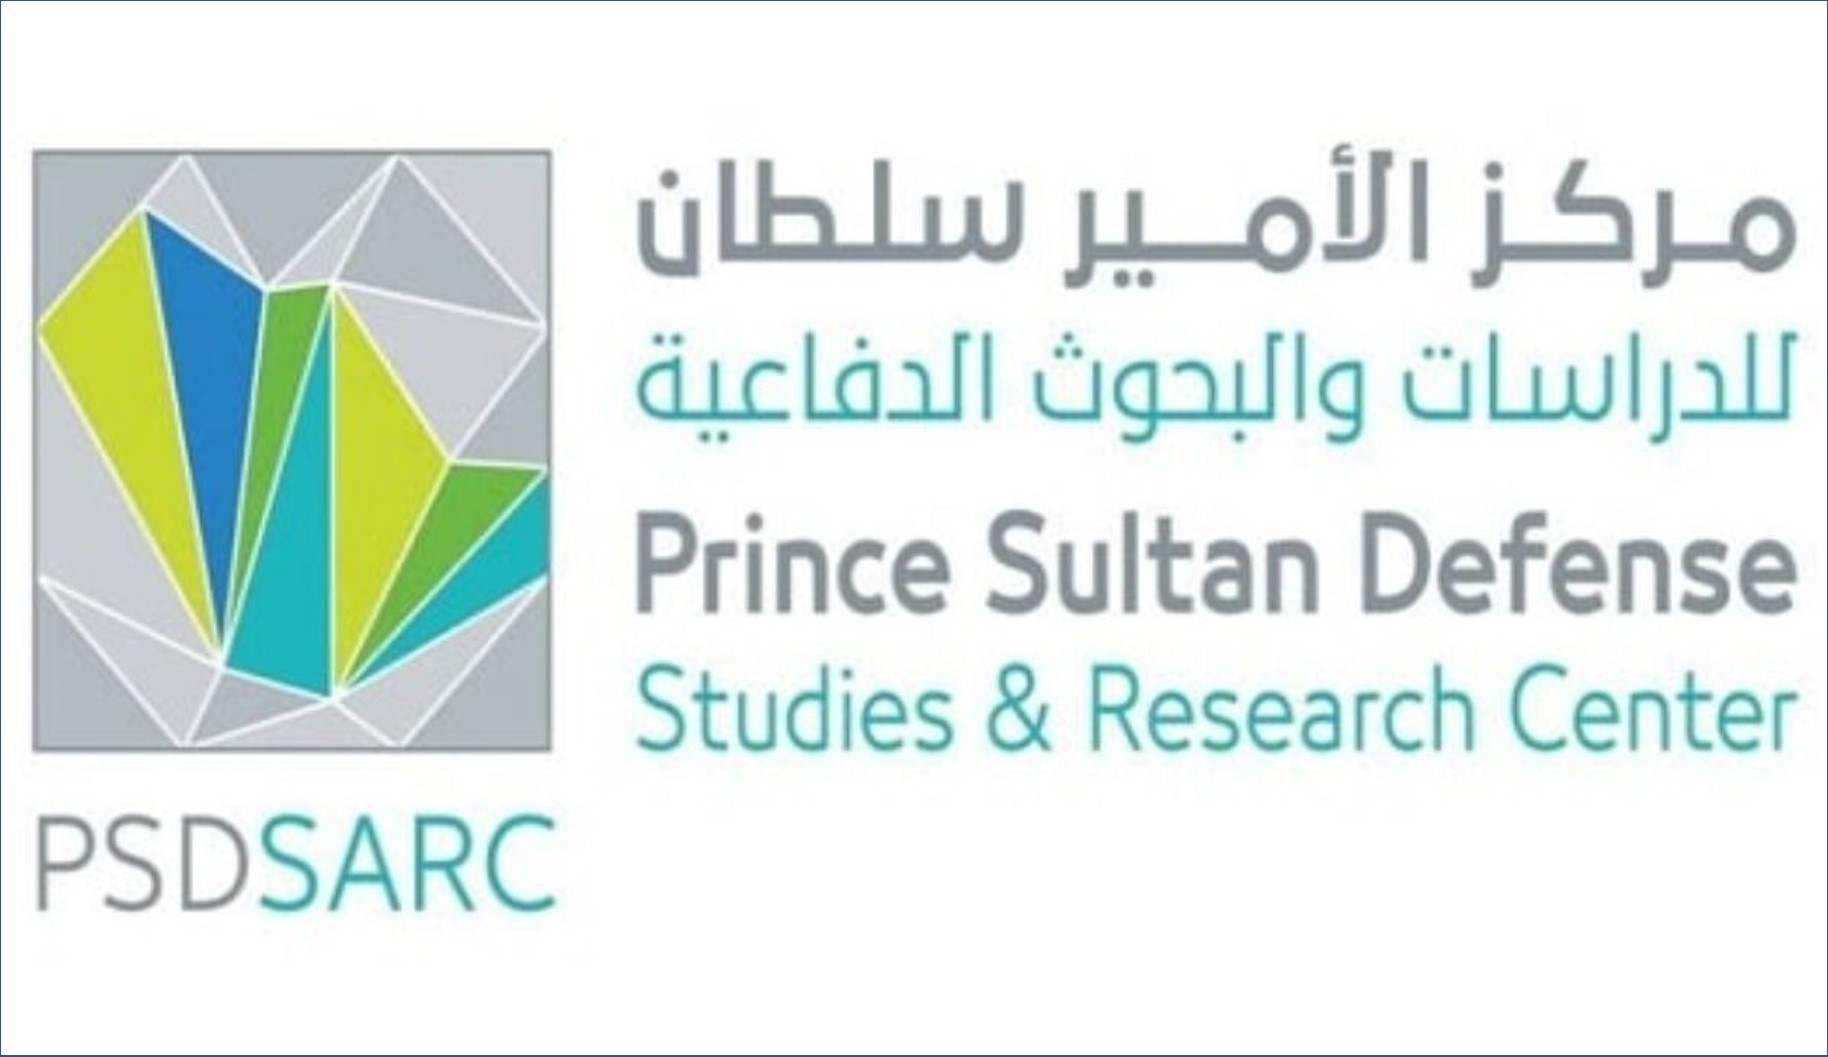 عااجل 19 وظيفة في مركز الأمير سلطان للدراسات والبحوث